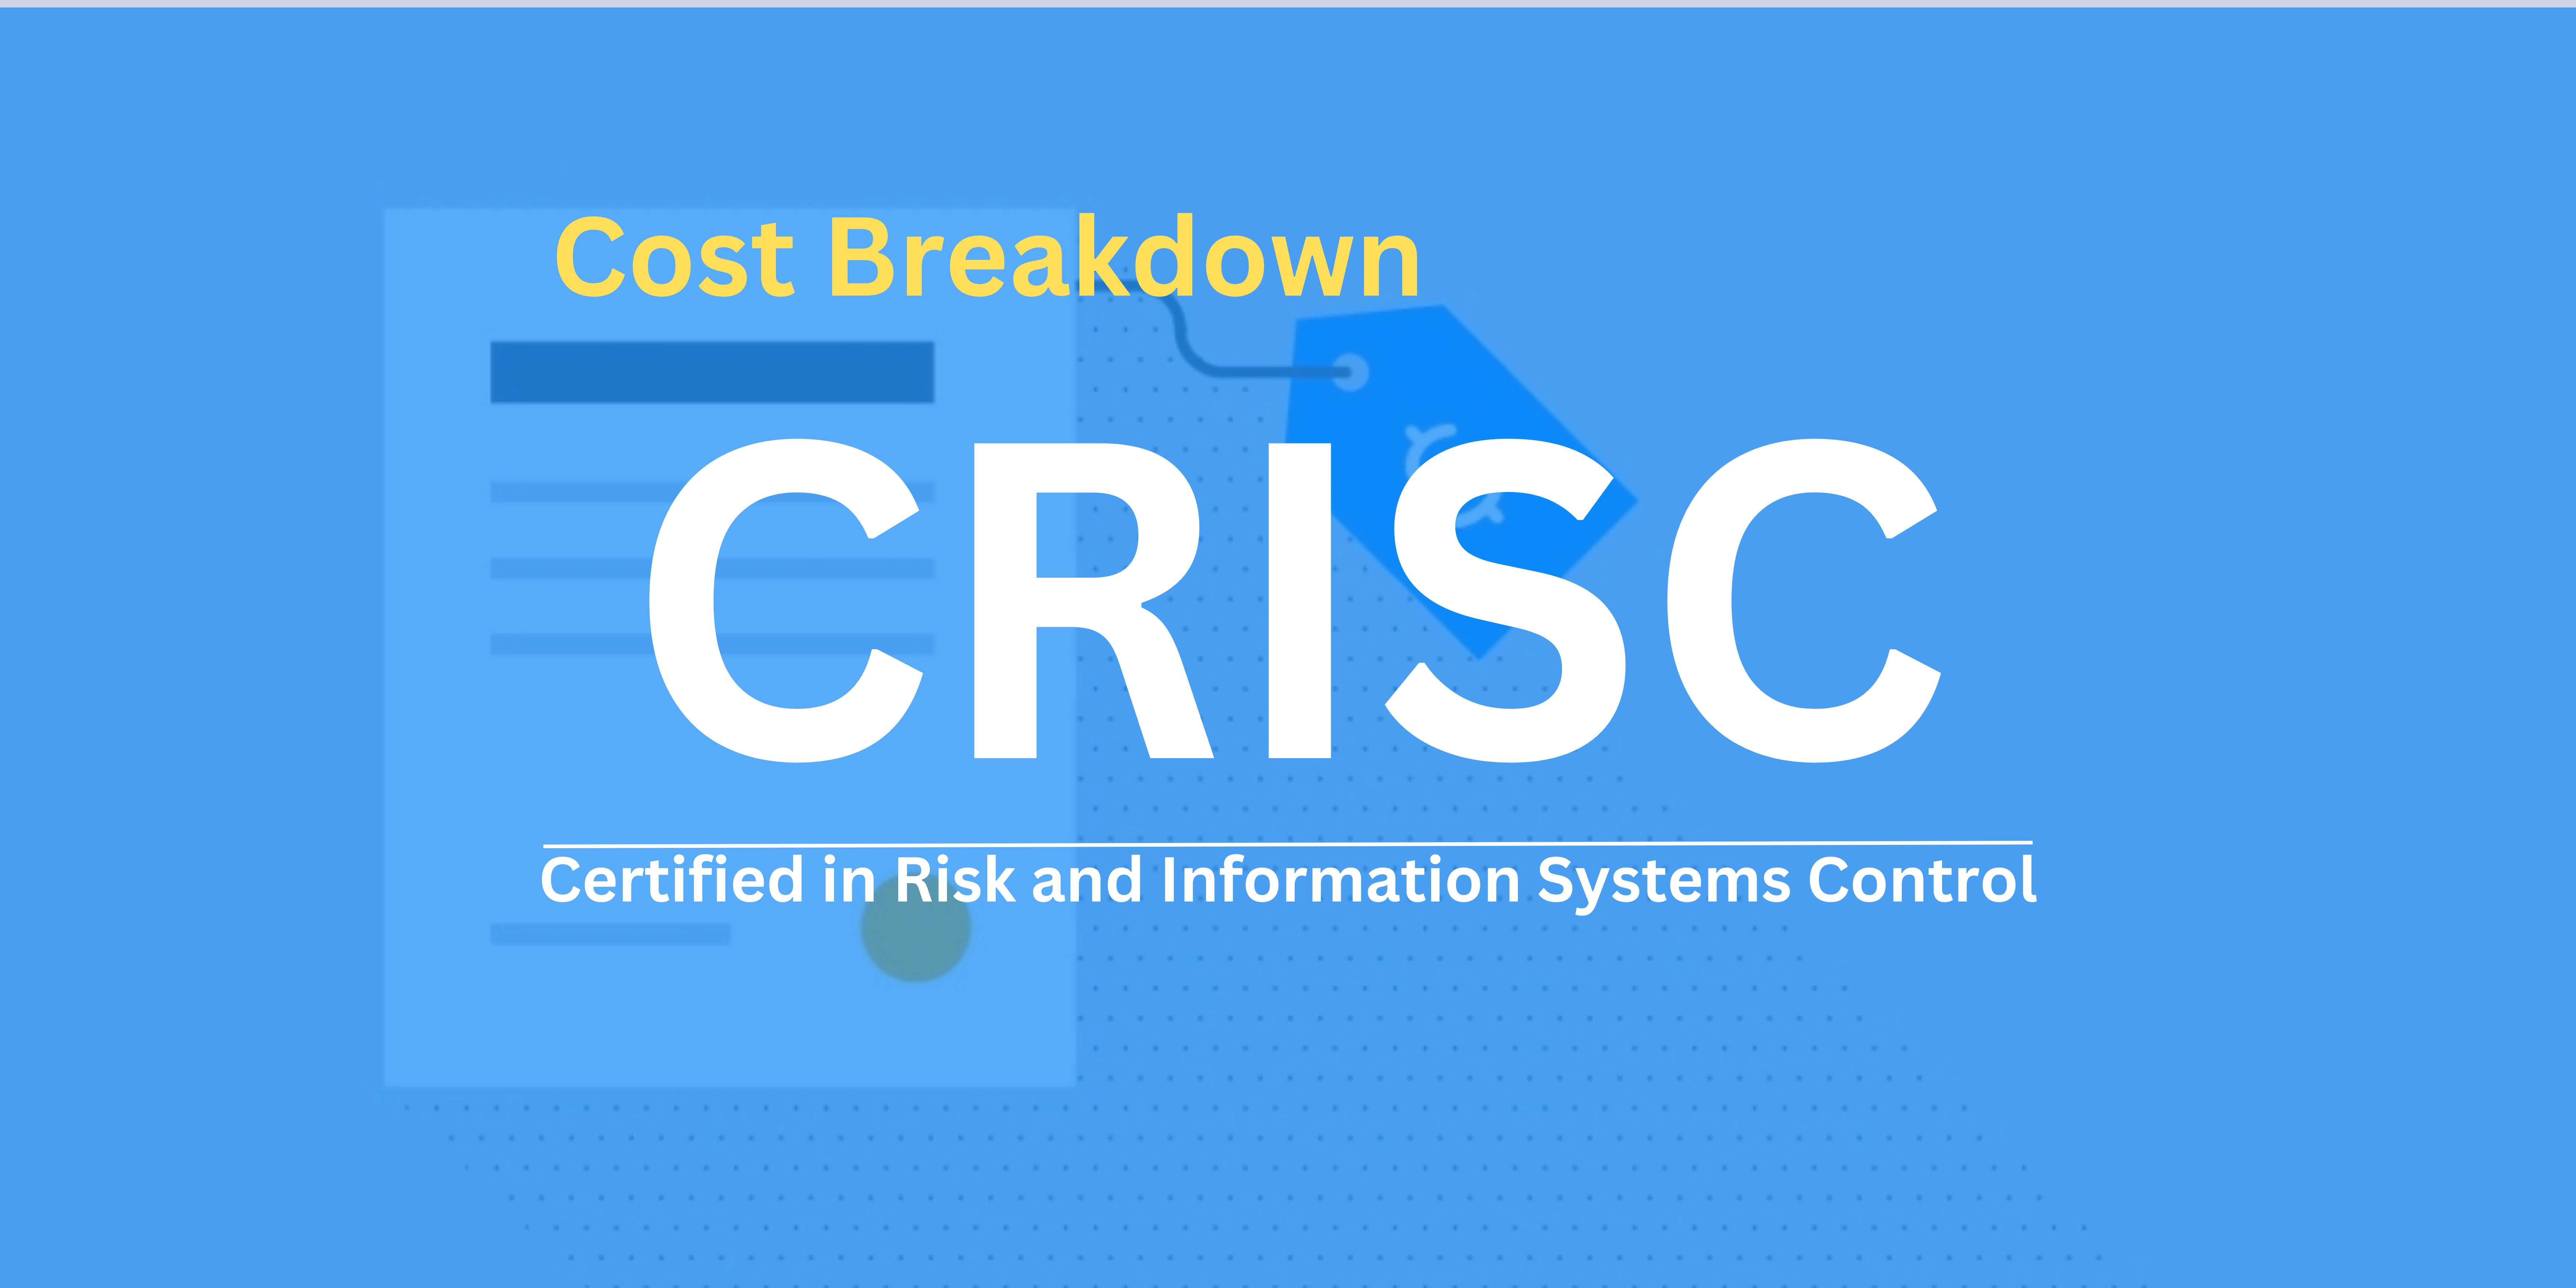 CRISC Certification Cost Breakdown